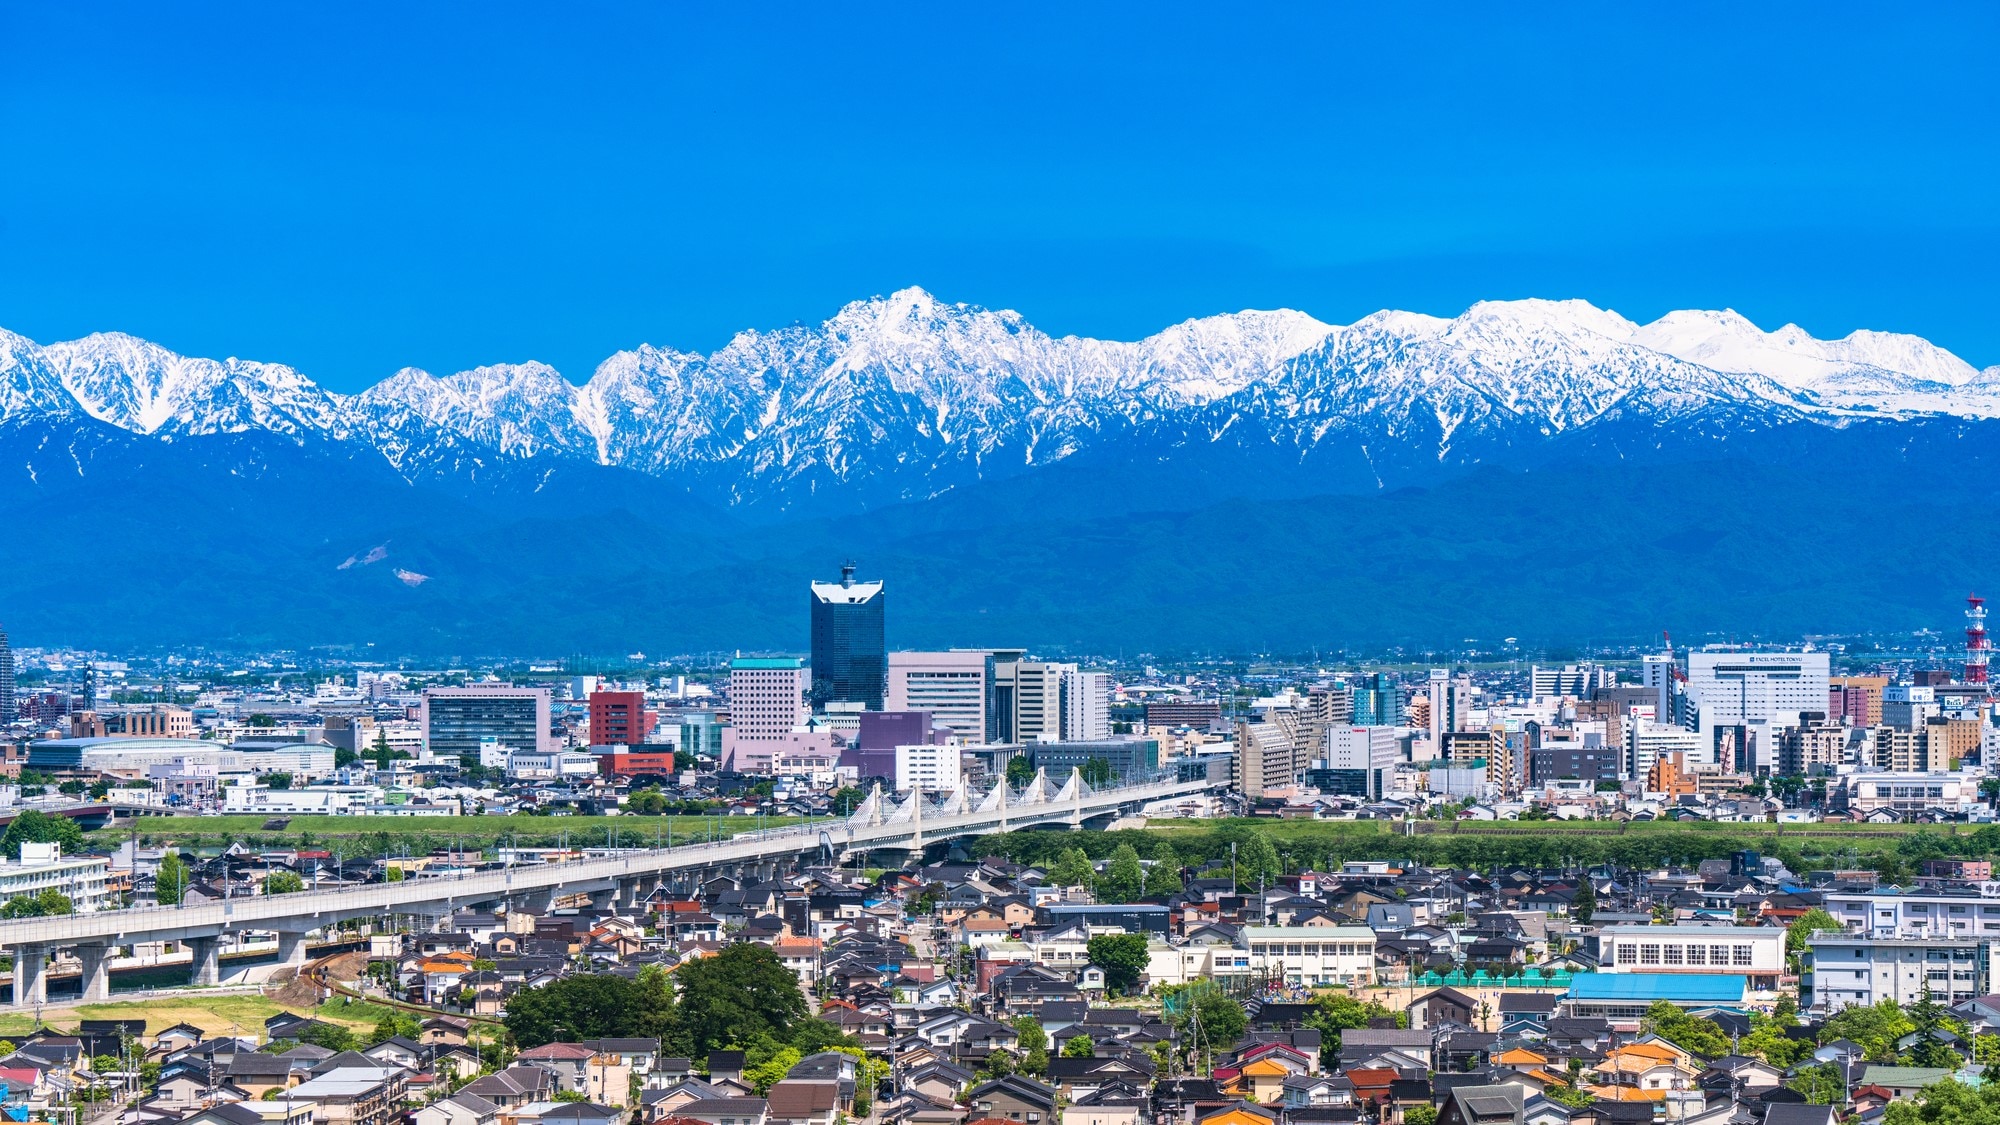 富山の宿泊でおすすめしたいホテル10選 立山黒部アルペンルートの玄関口 Skyticket 観光ガイド